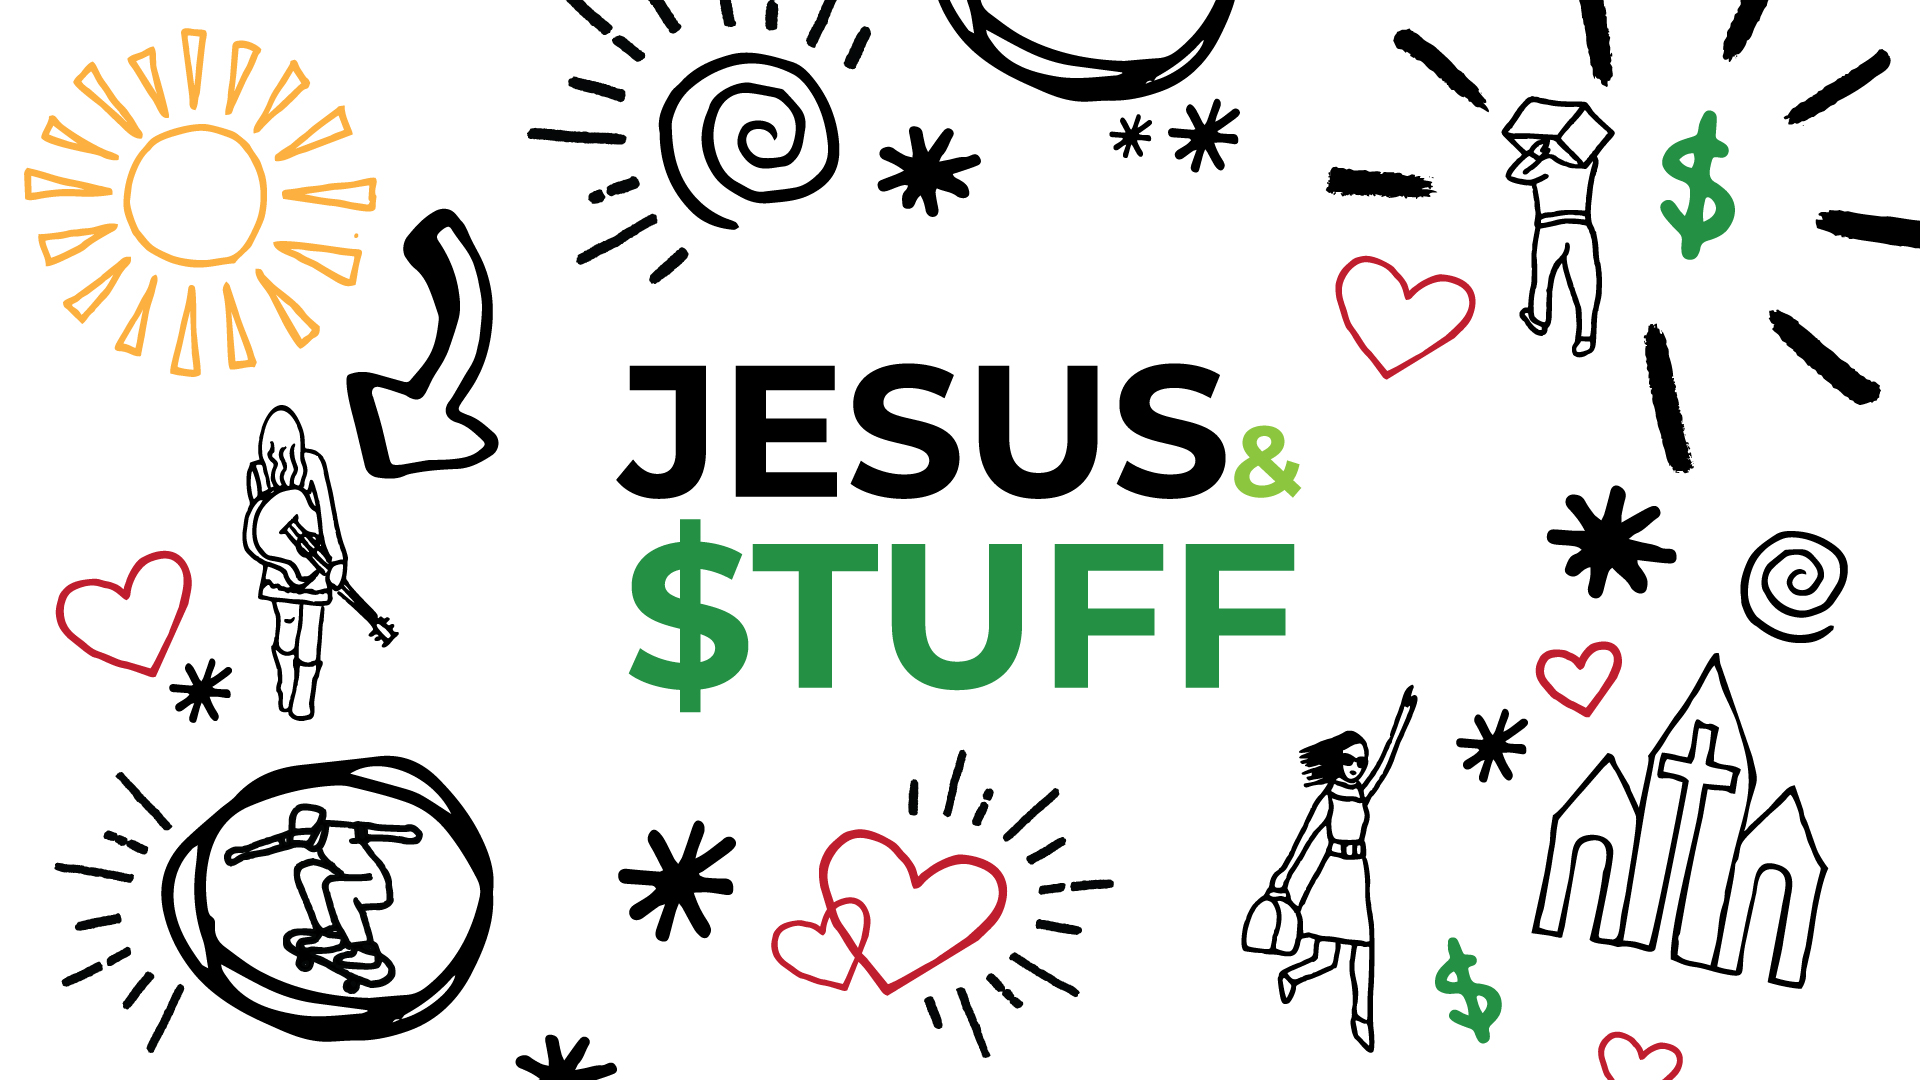 Jesus & $tuff - Part IV